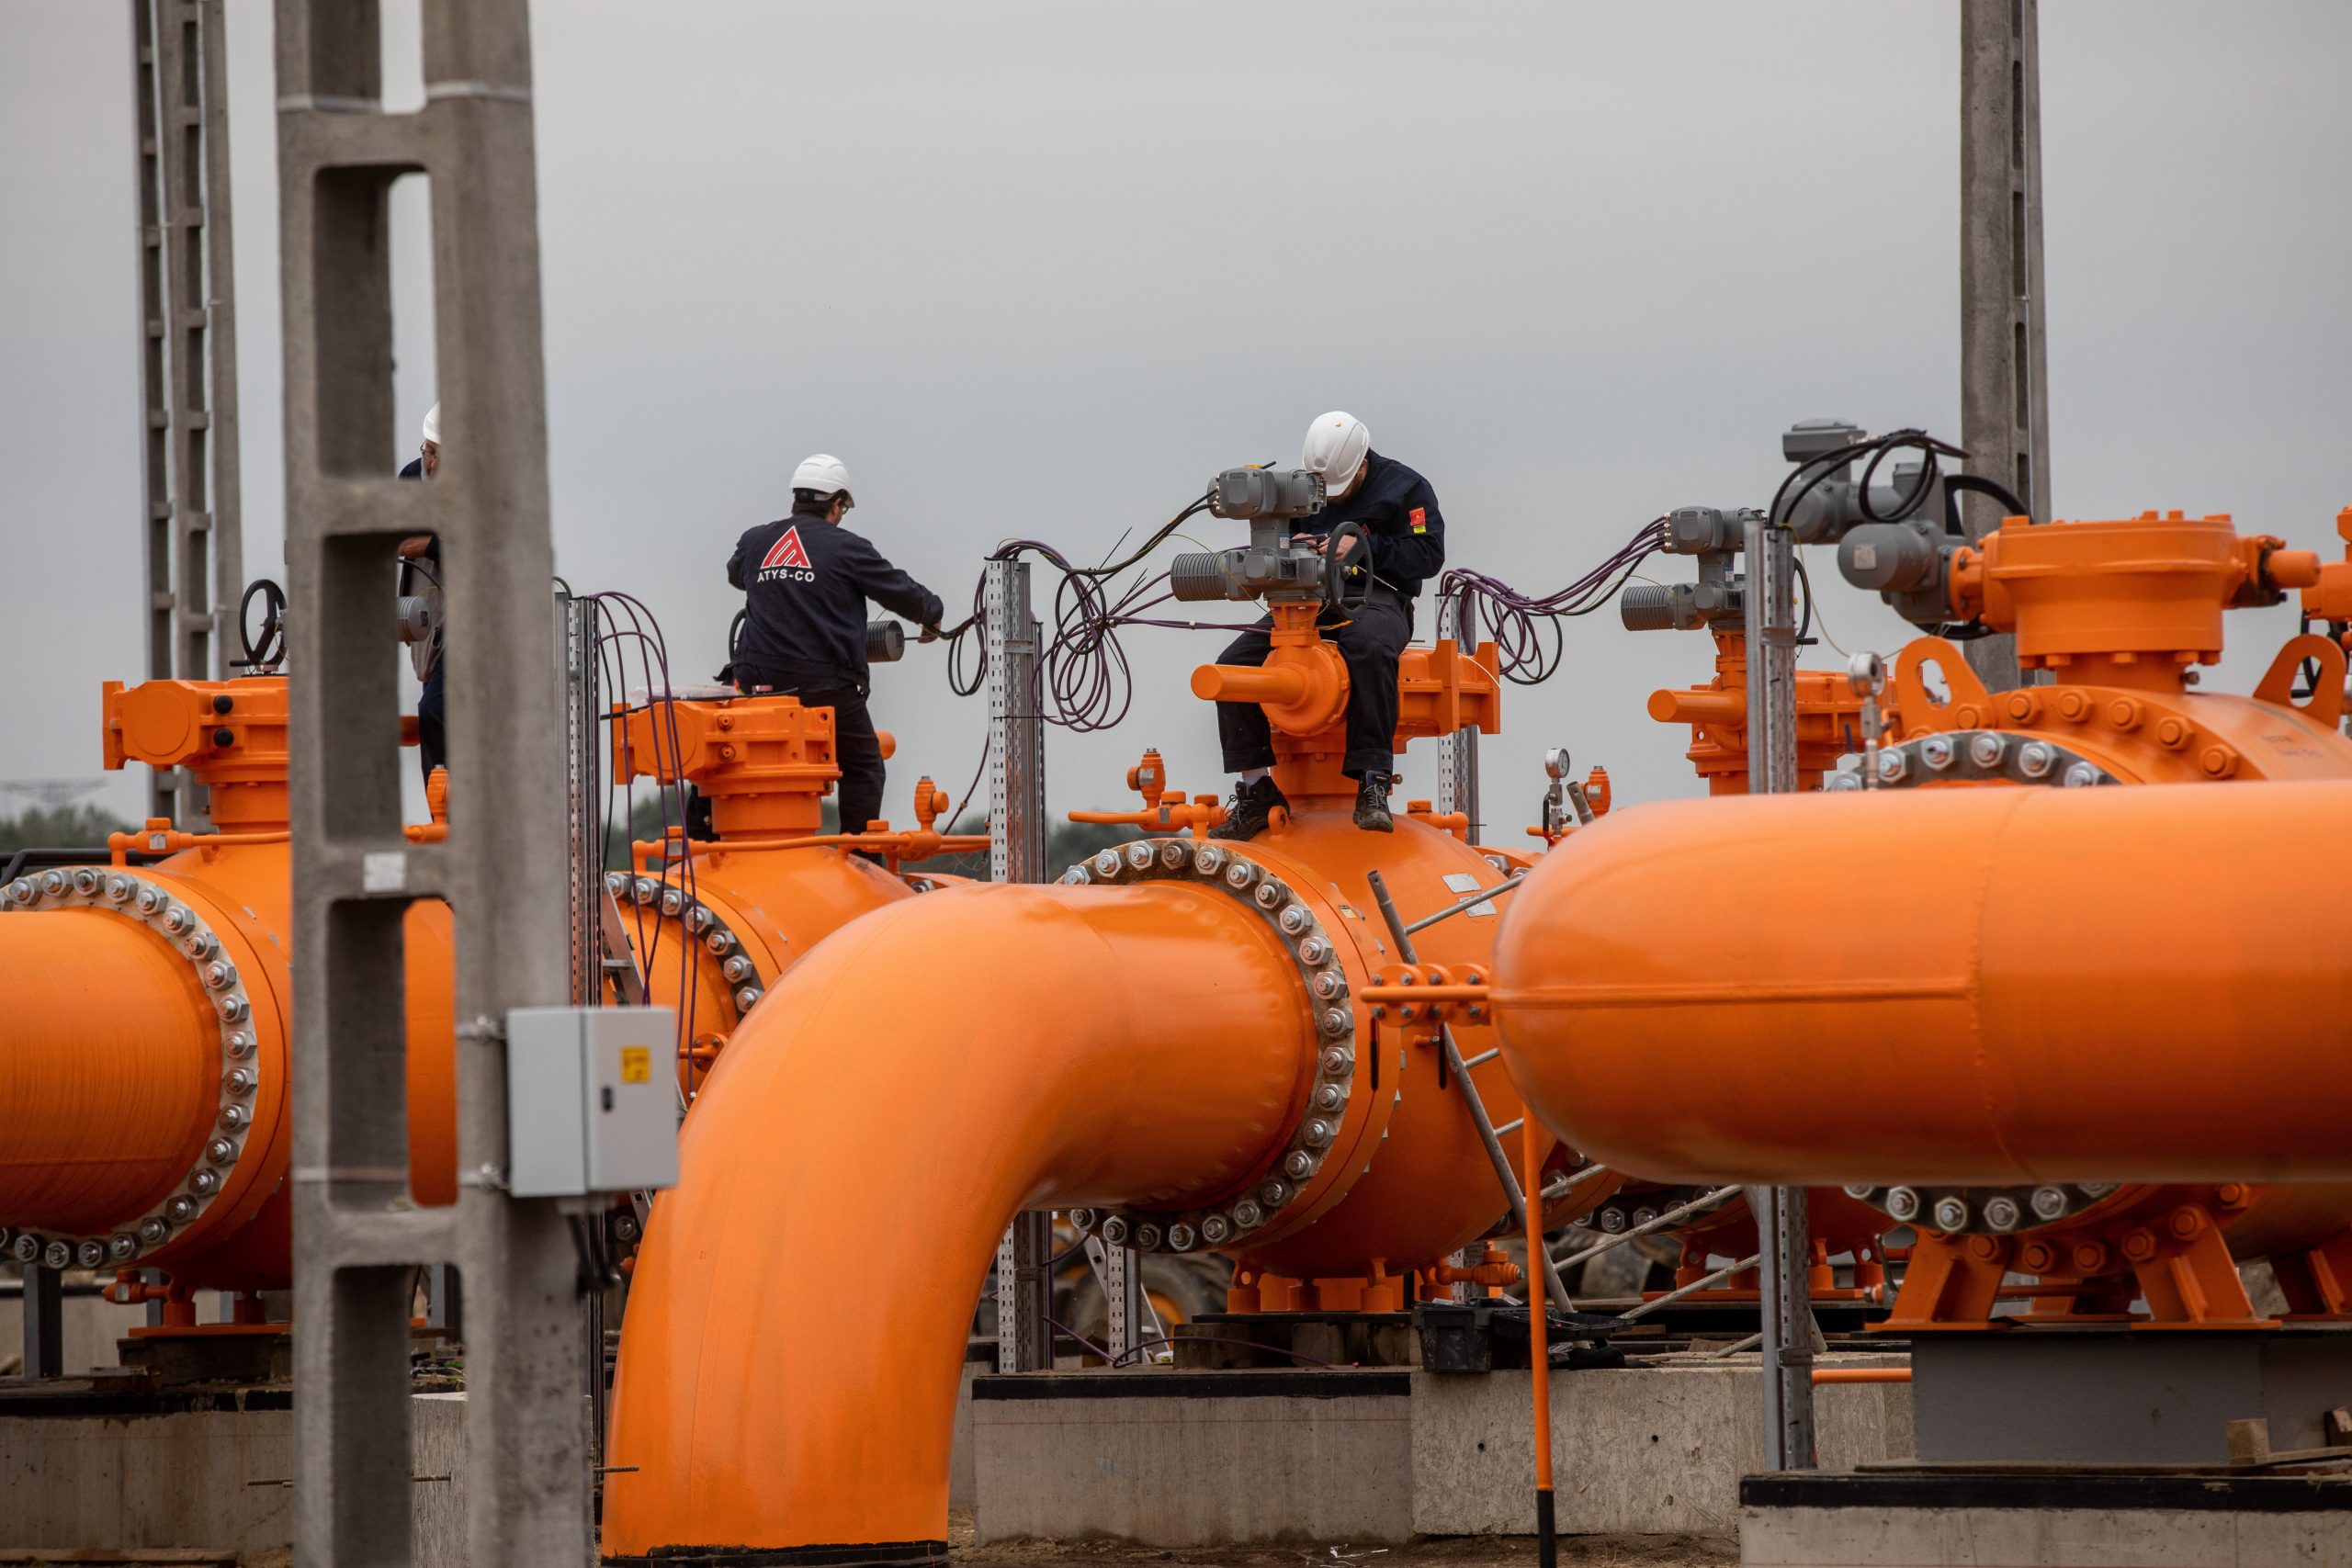 Ungarns Abhängigkeit von russischem Gas kritisiert